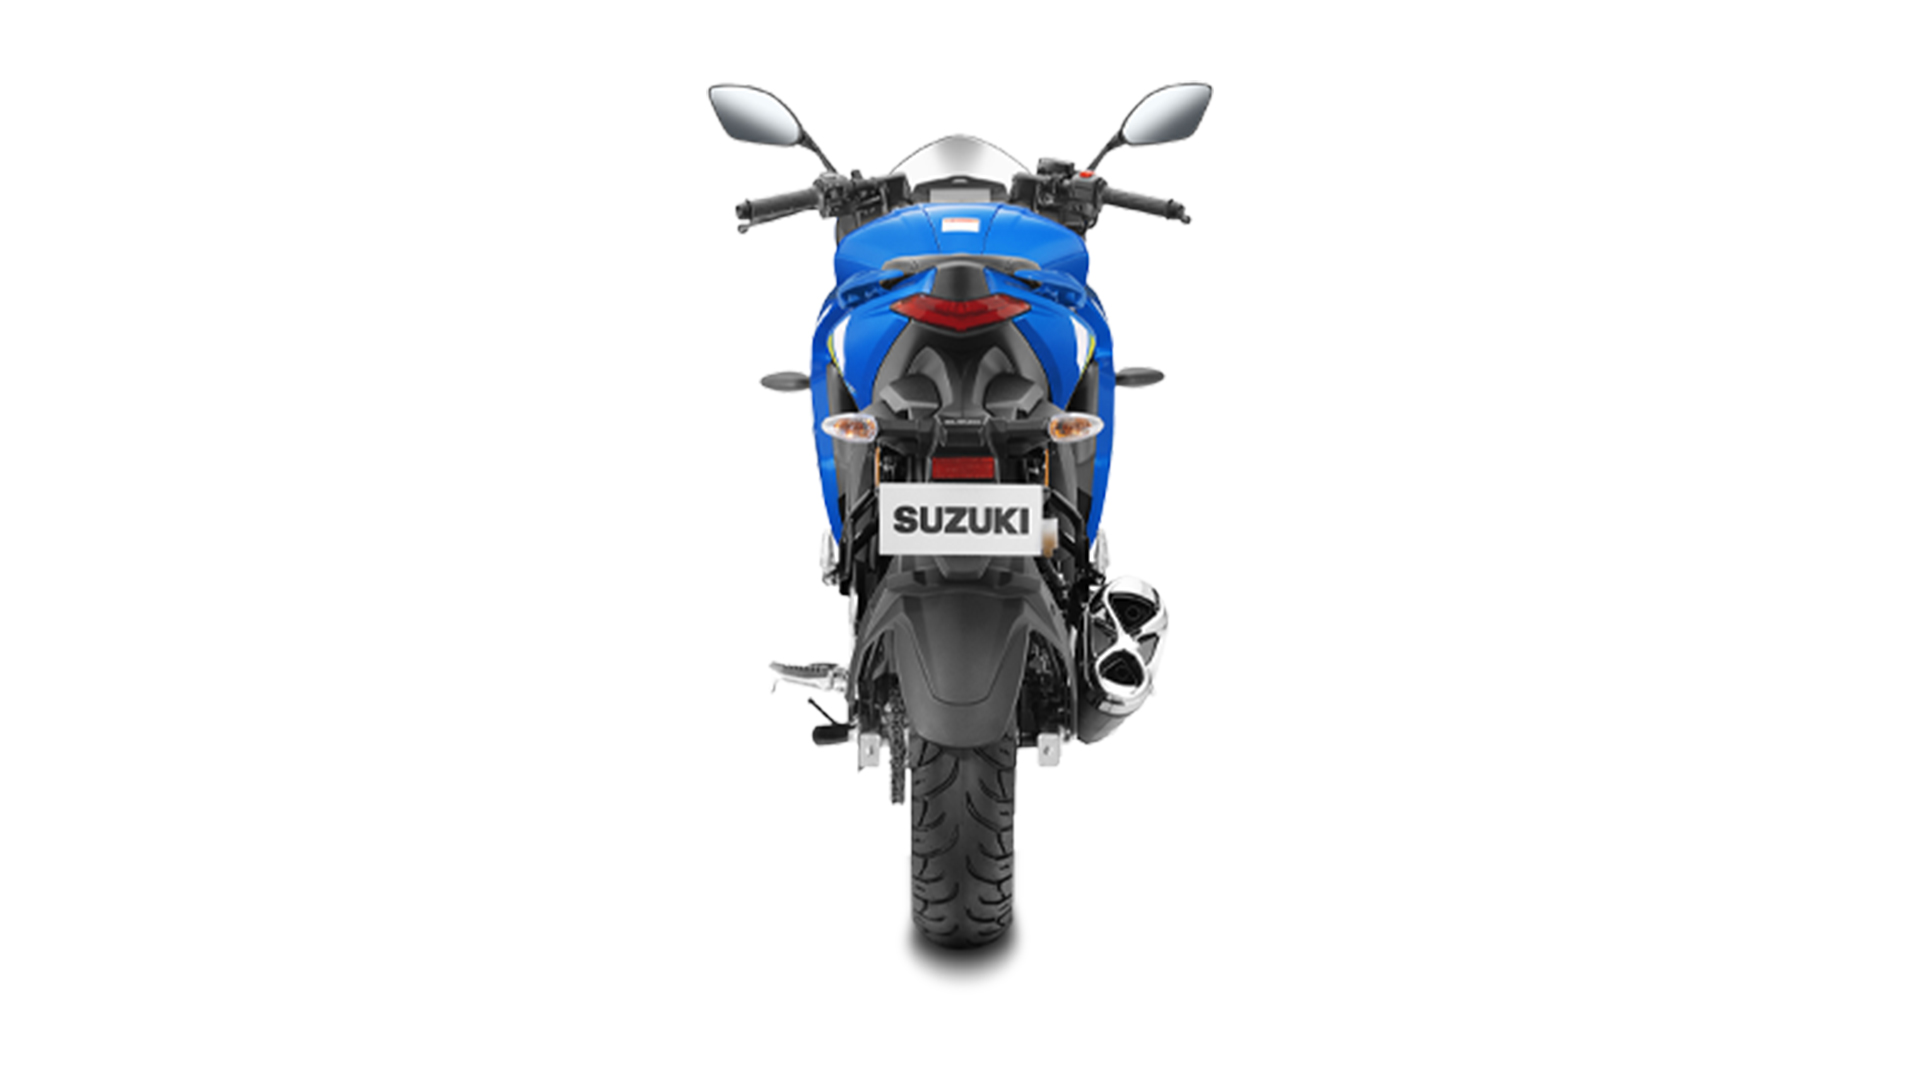 Suzuki Gixxer SF 2020 MotoGP edition